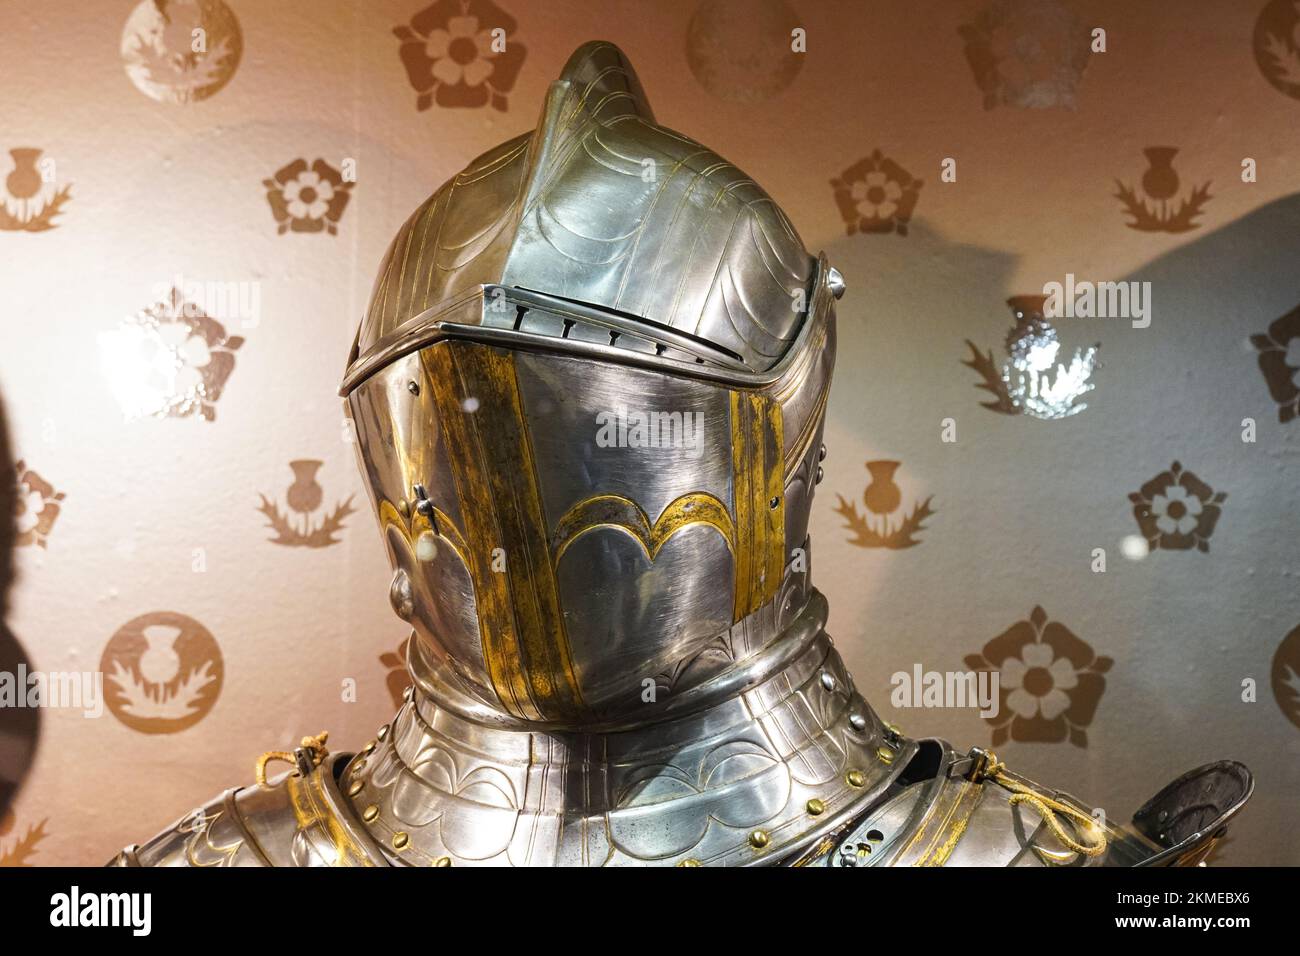 Collection d'armures royales exposée dans l'armurerie de la Tour de Londres, Londres Angleterre Royaume-Uni Banque D'Images